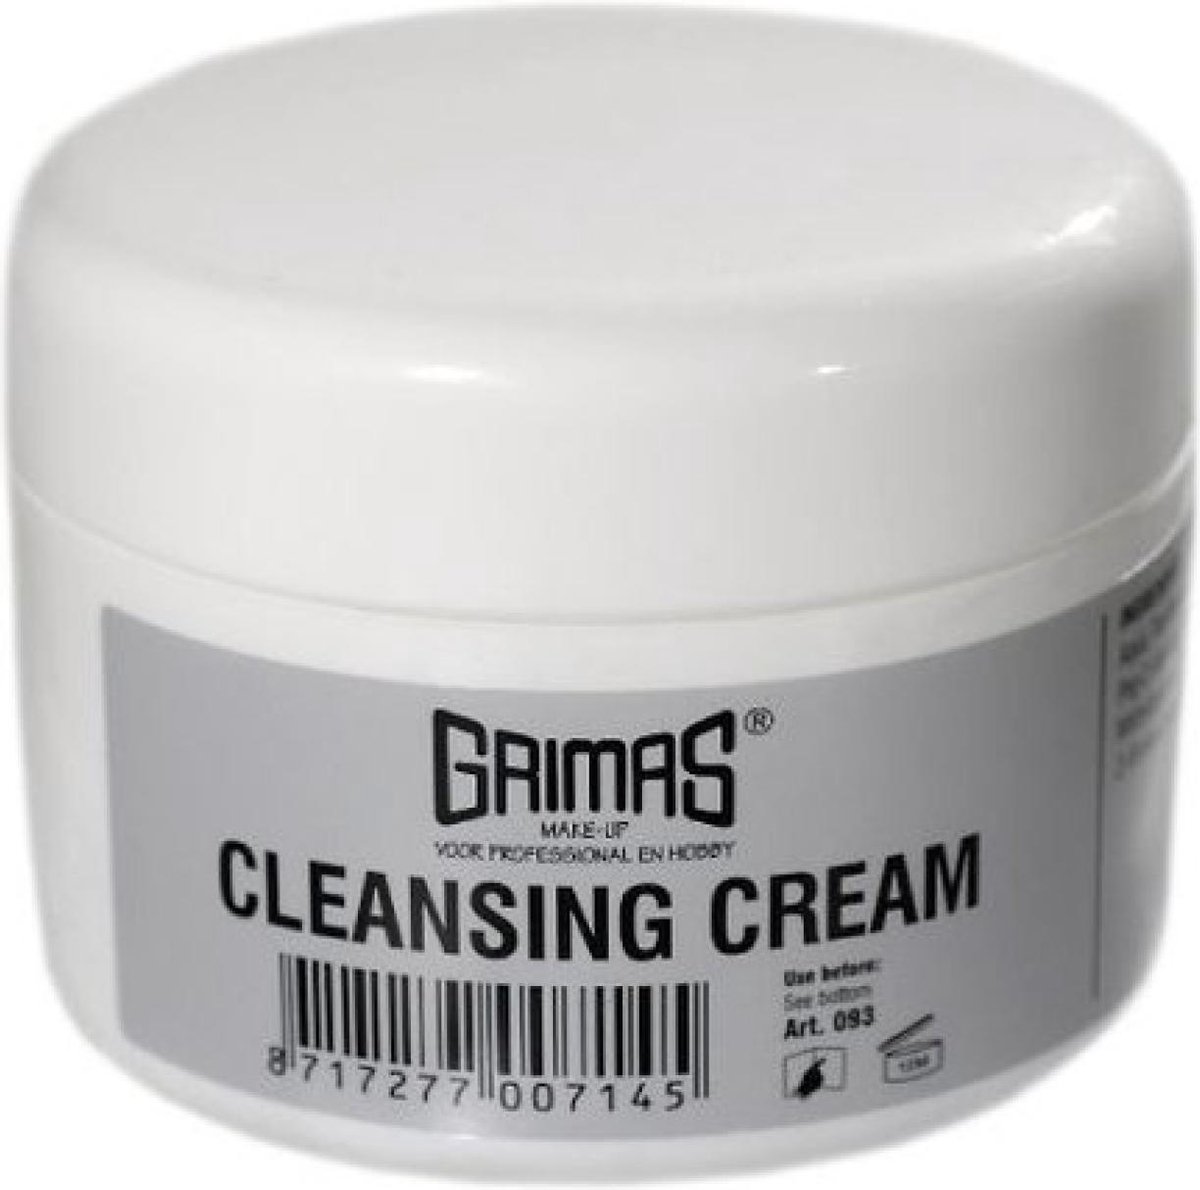 Grimas - Cleansing cream - 200ml